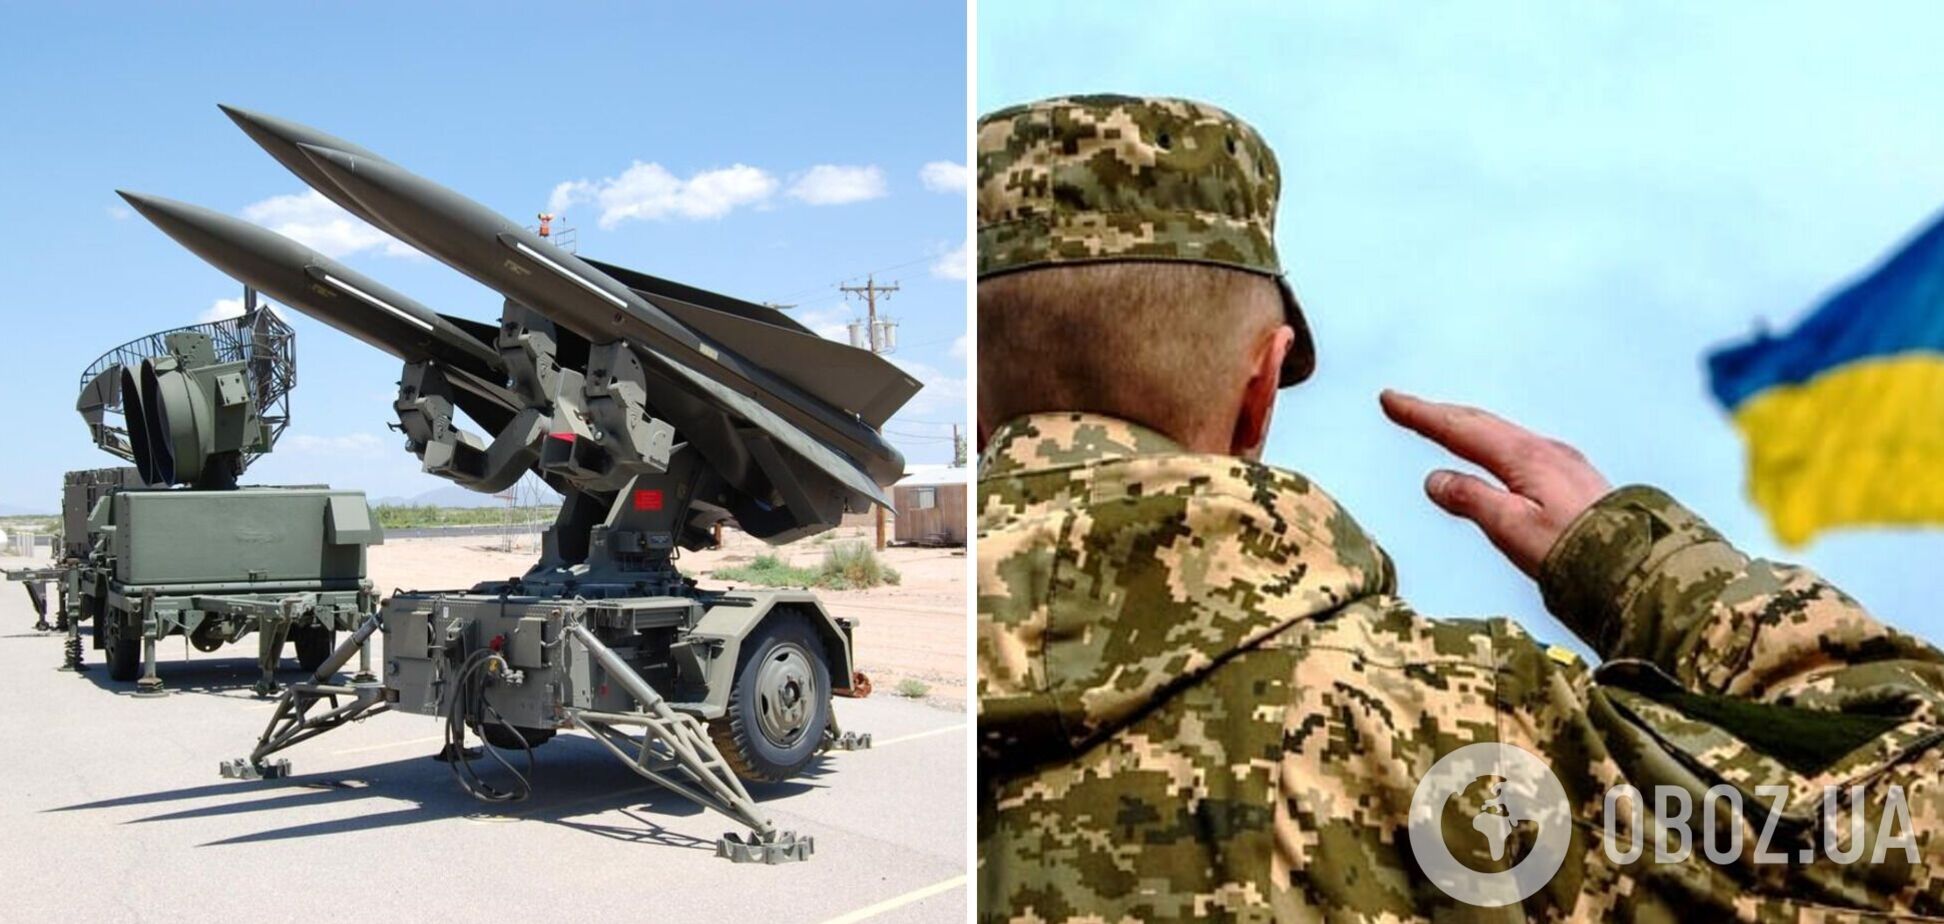 'Яструб заступає на бойове чергування': в ЗСУ анонсували посилення української ППО американським ЗРК Hawk